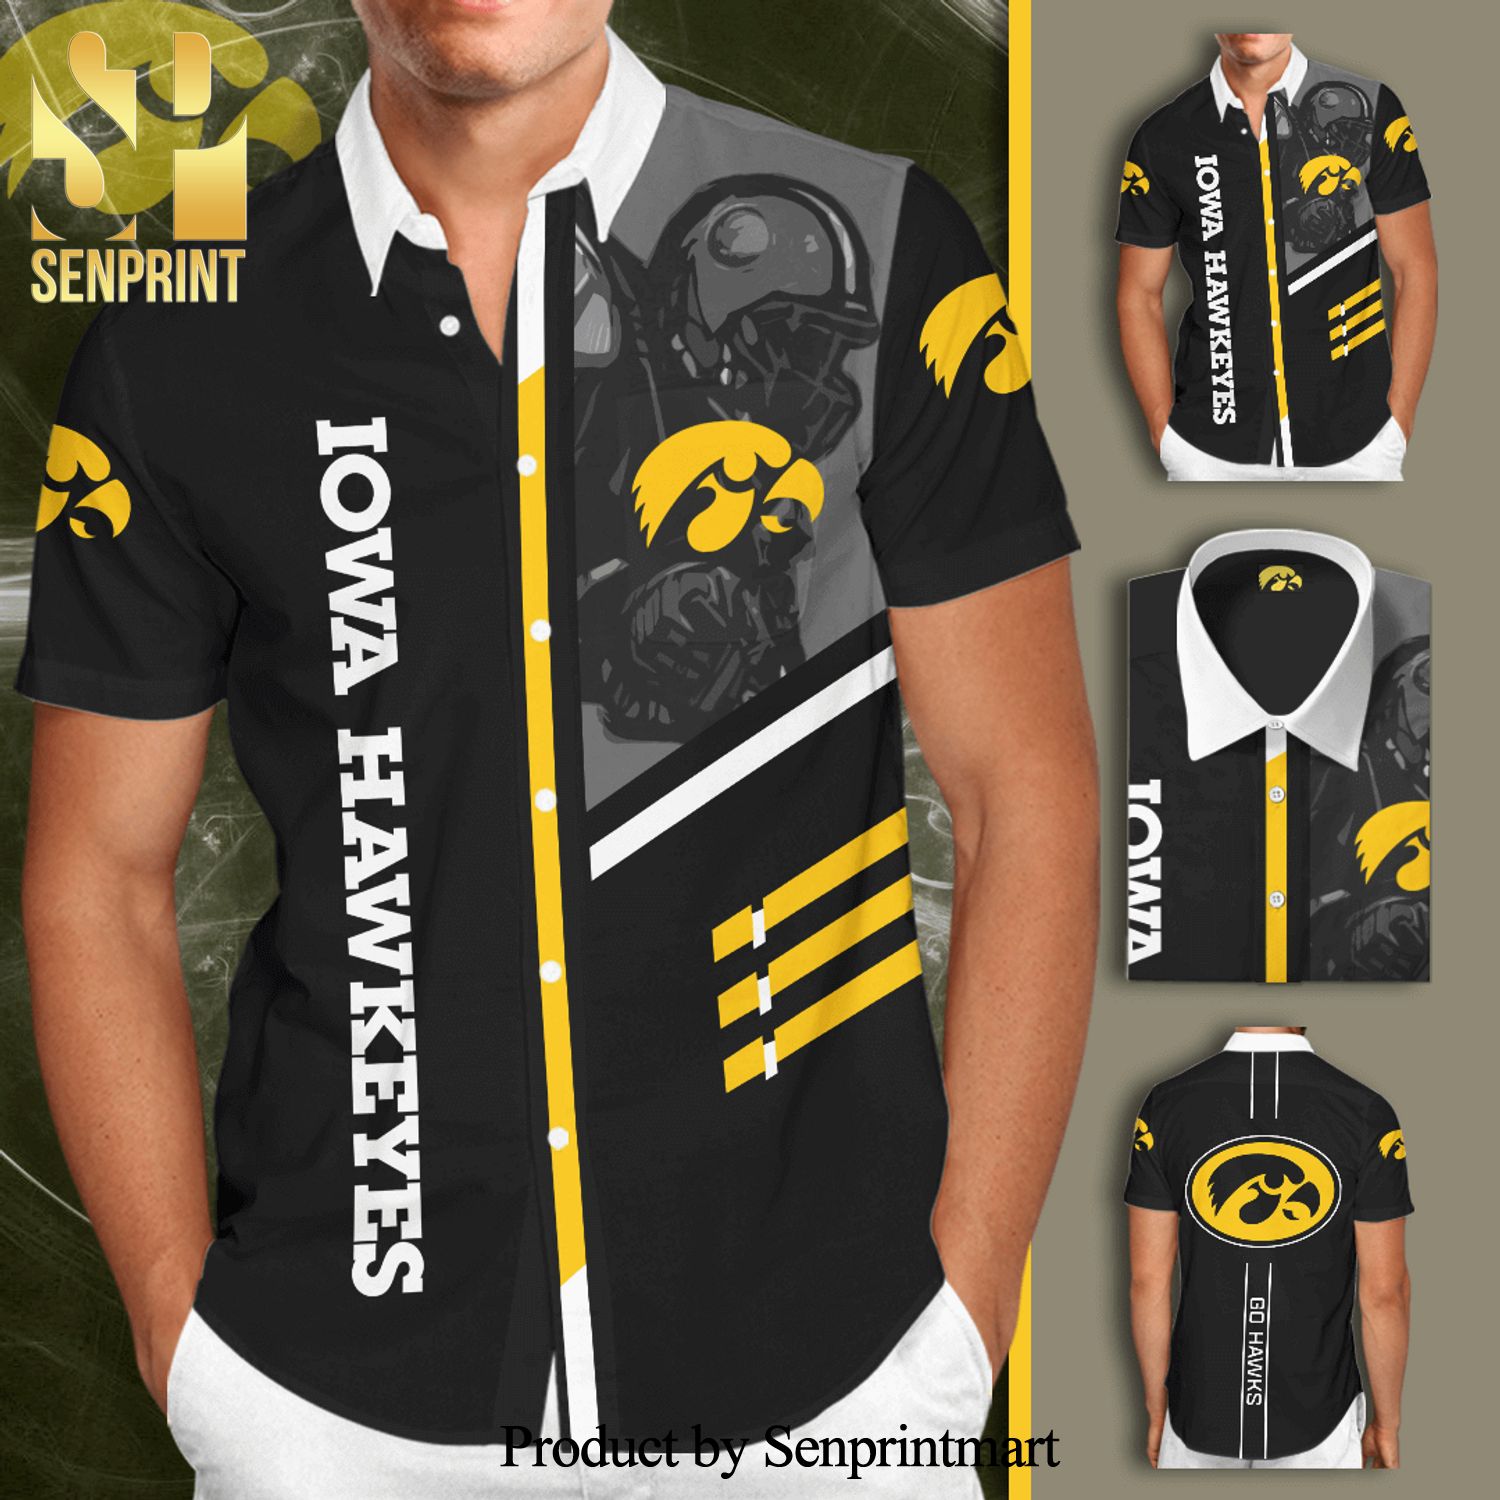 Iowa Hawkeyes Football Team Full Printing Hawaiian Shirt – Black